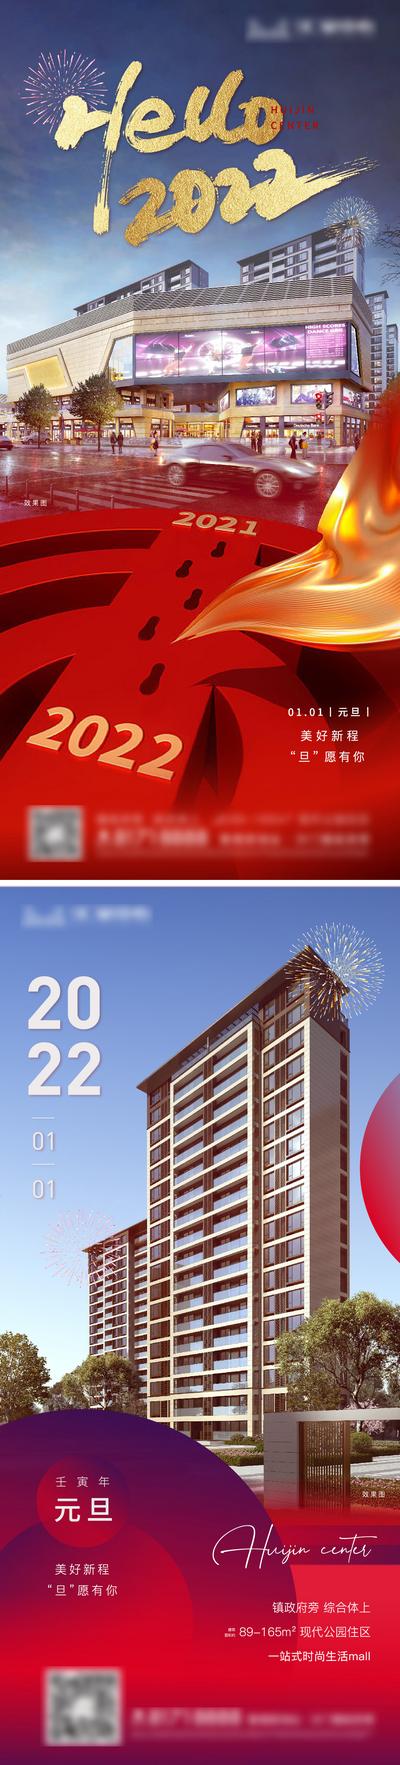 南门网 海报 房地产 公历节日 元旦 2022 新年 